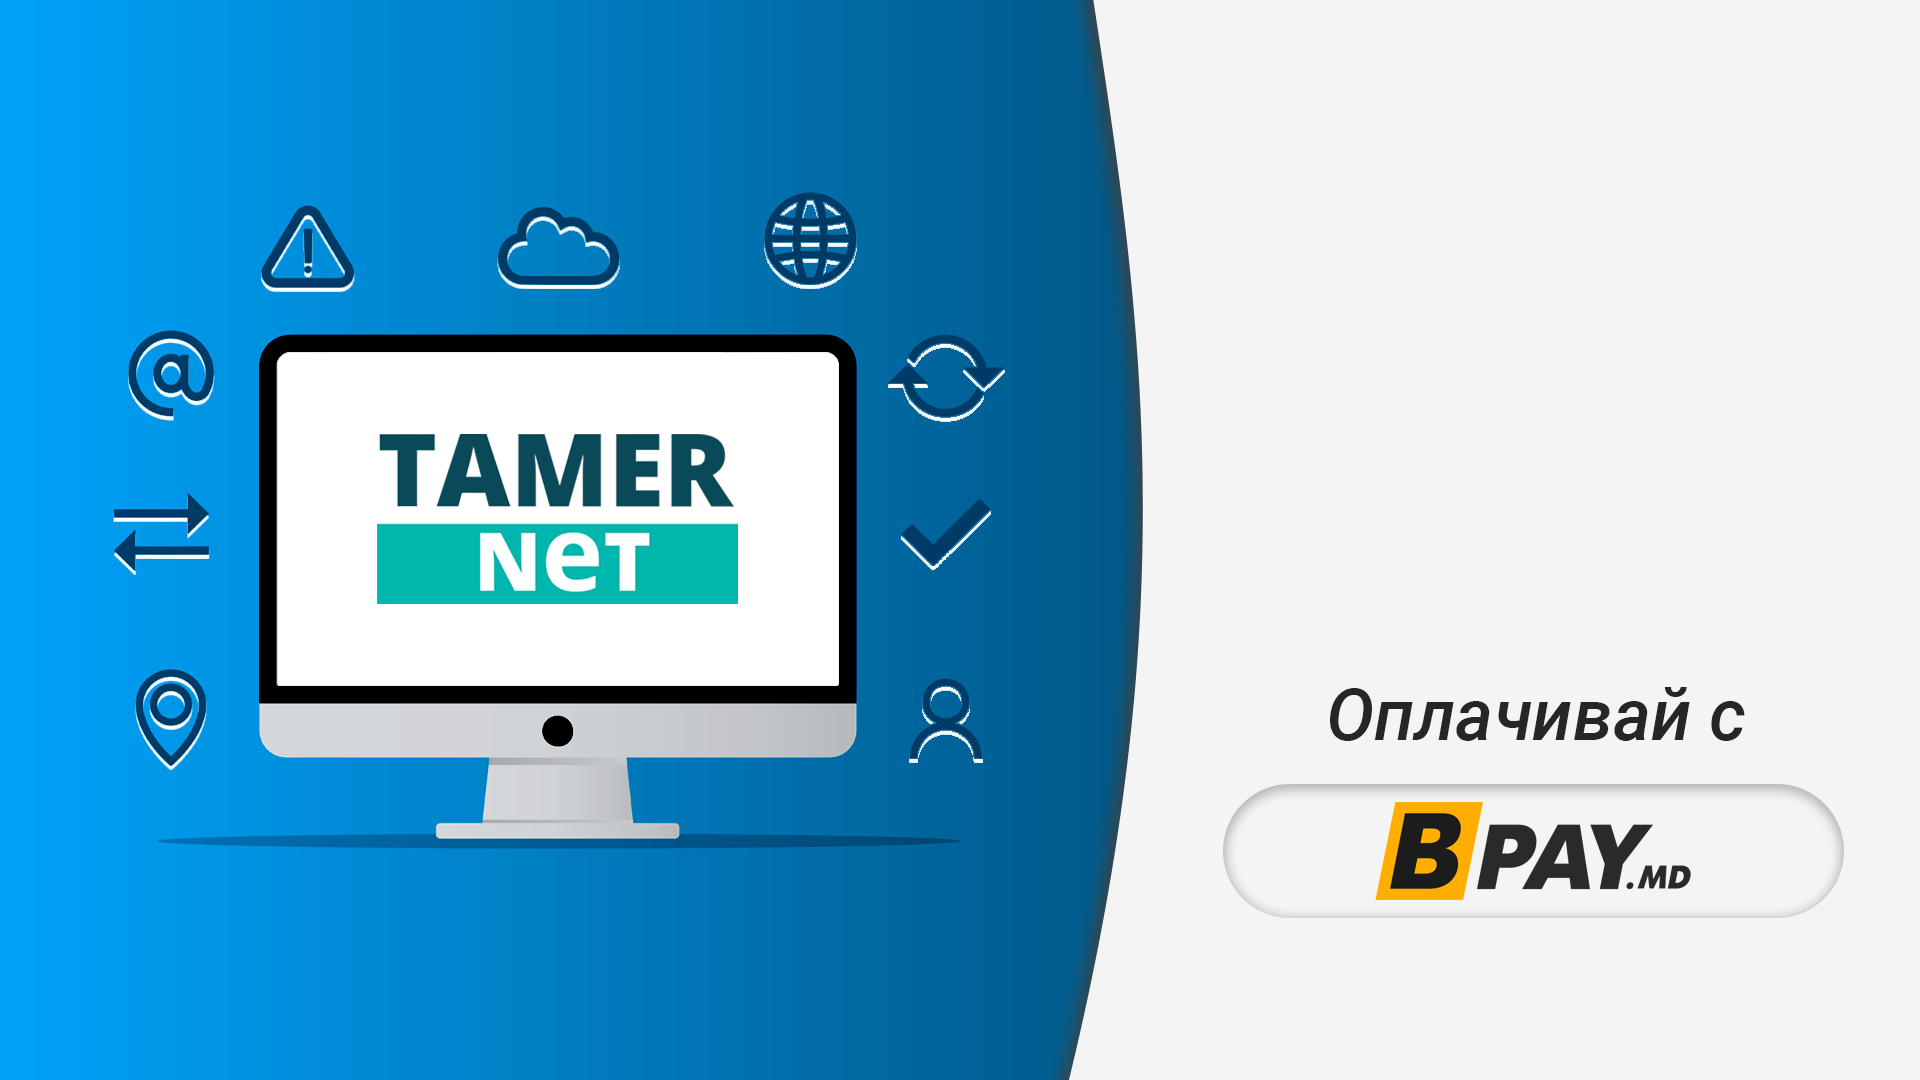 🔸 Оплачивай услуги интернет-провайдера Tamer Net через BPay